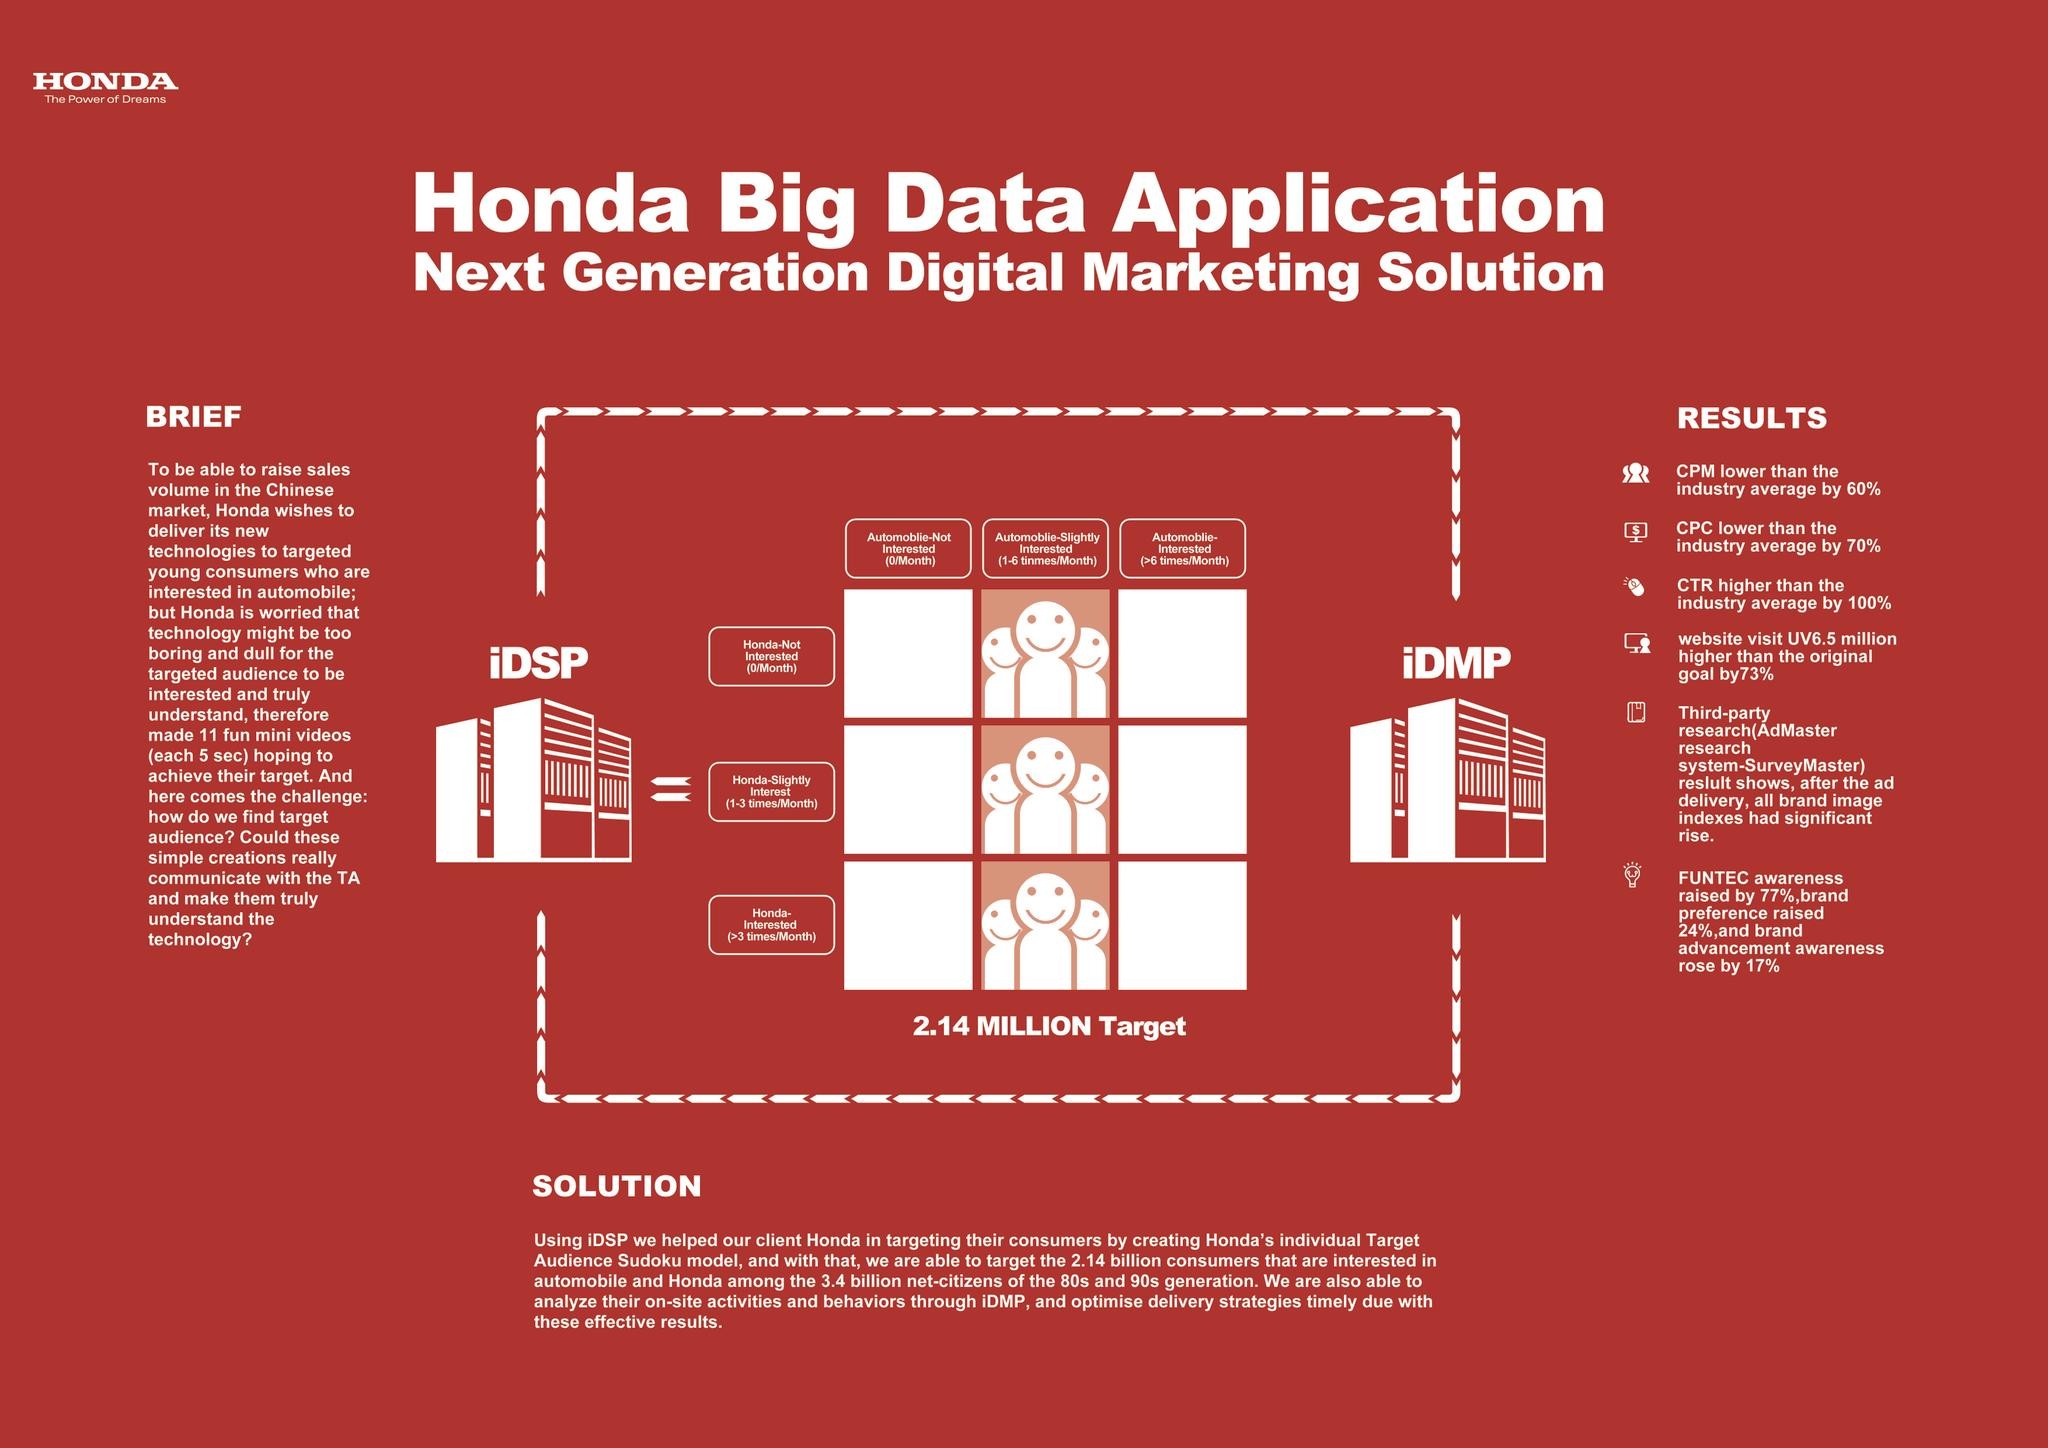 HONDA BIG DATA APPLICATION - NEXT GENERATION DIGITAL MARKETING SOLUTION